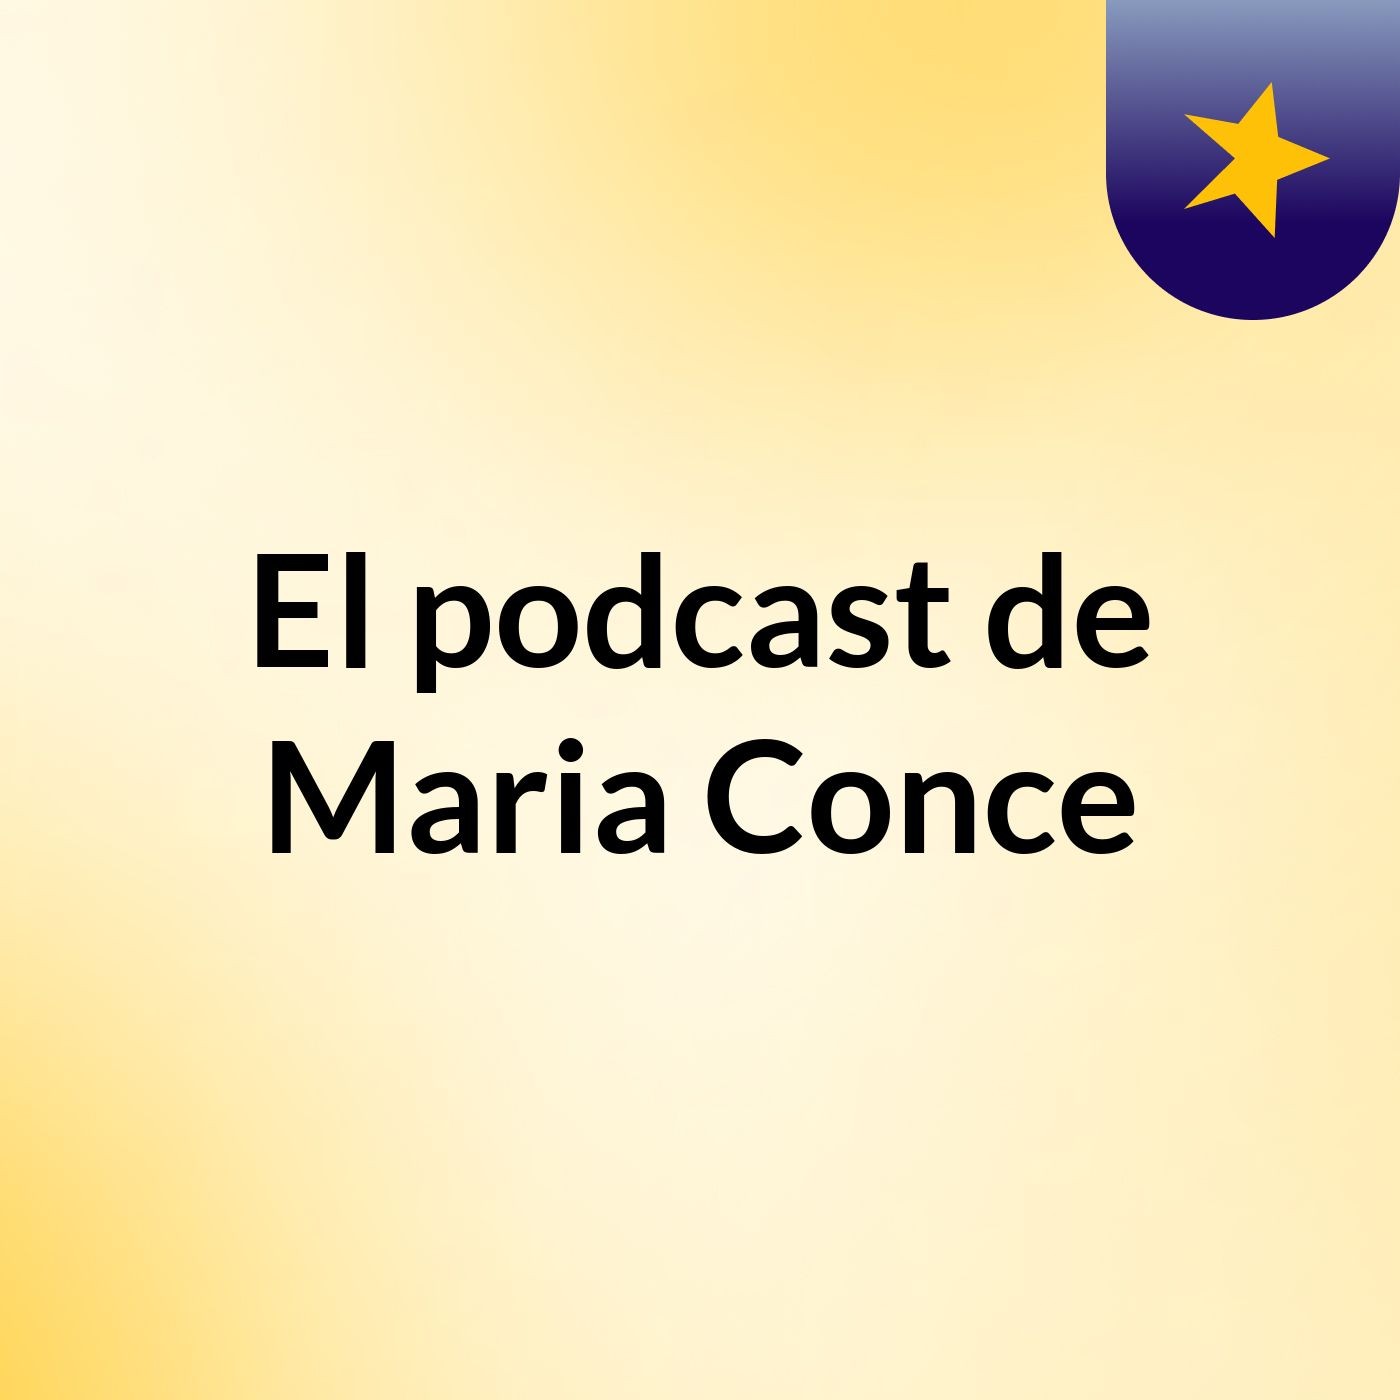 El podcast de Maria Conce